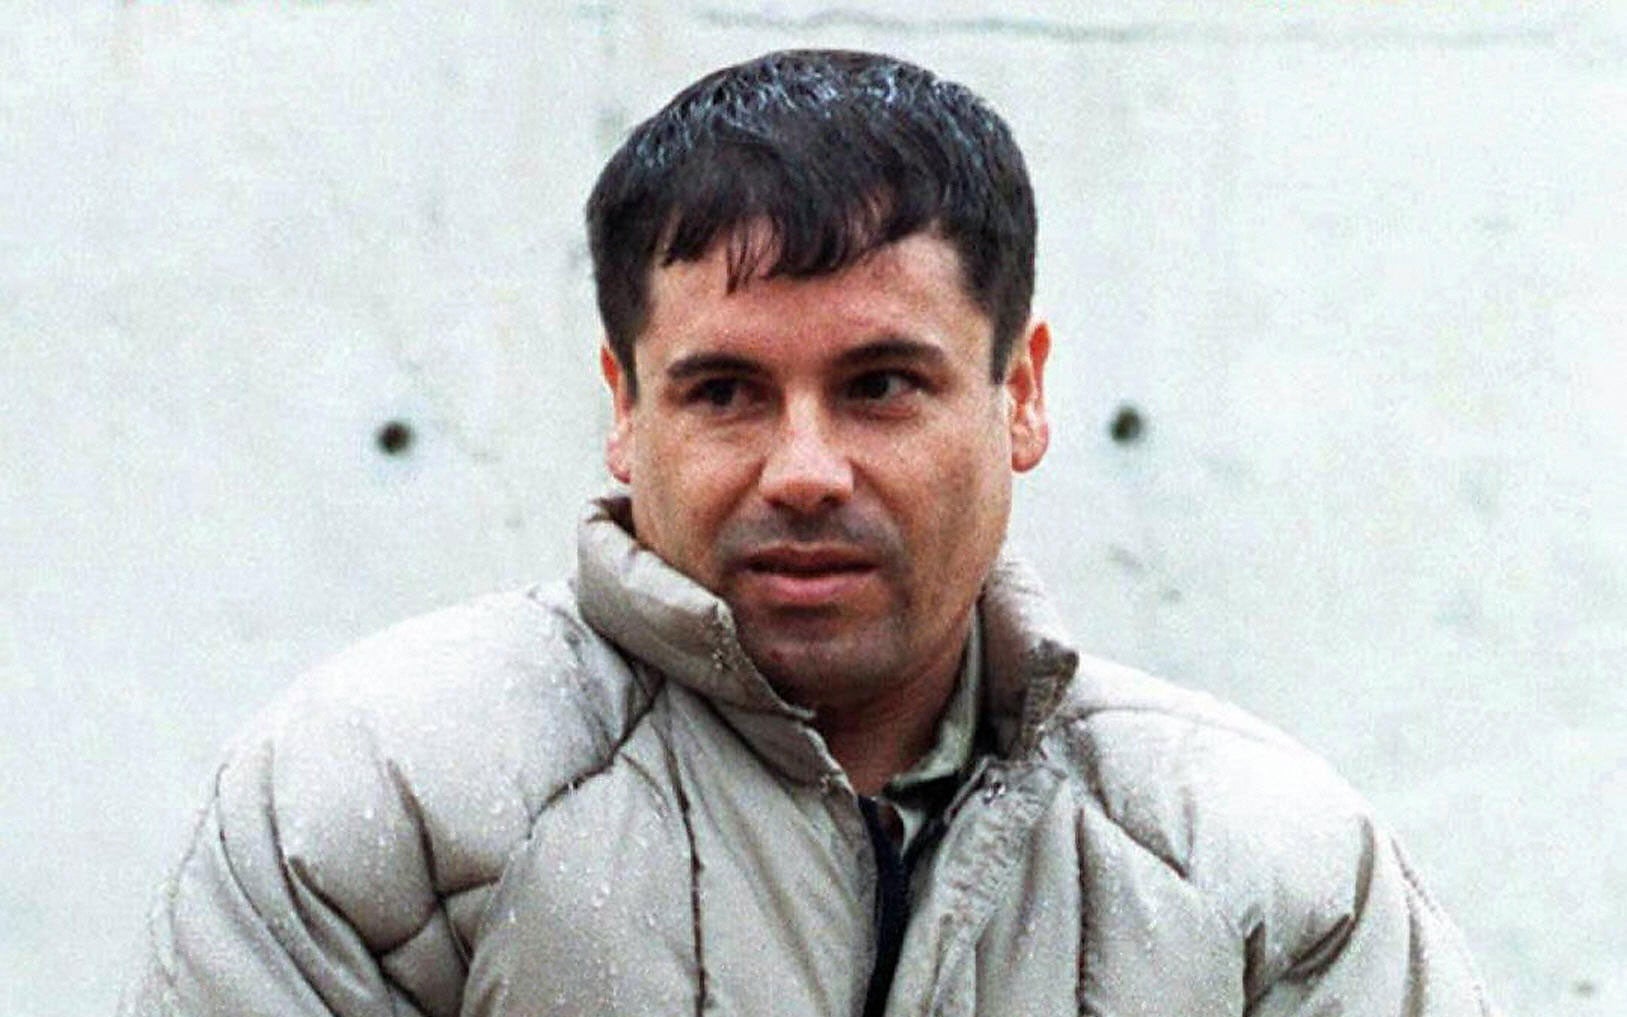 'El Chapo' Mexican drug lord Joaquin Guzman escapes from prison